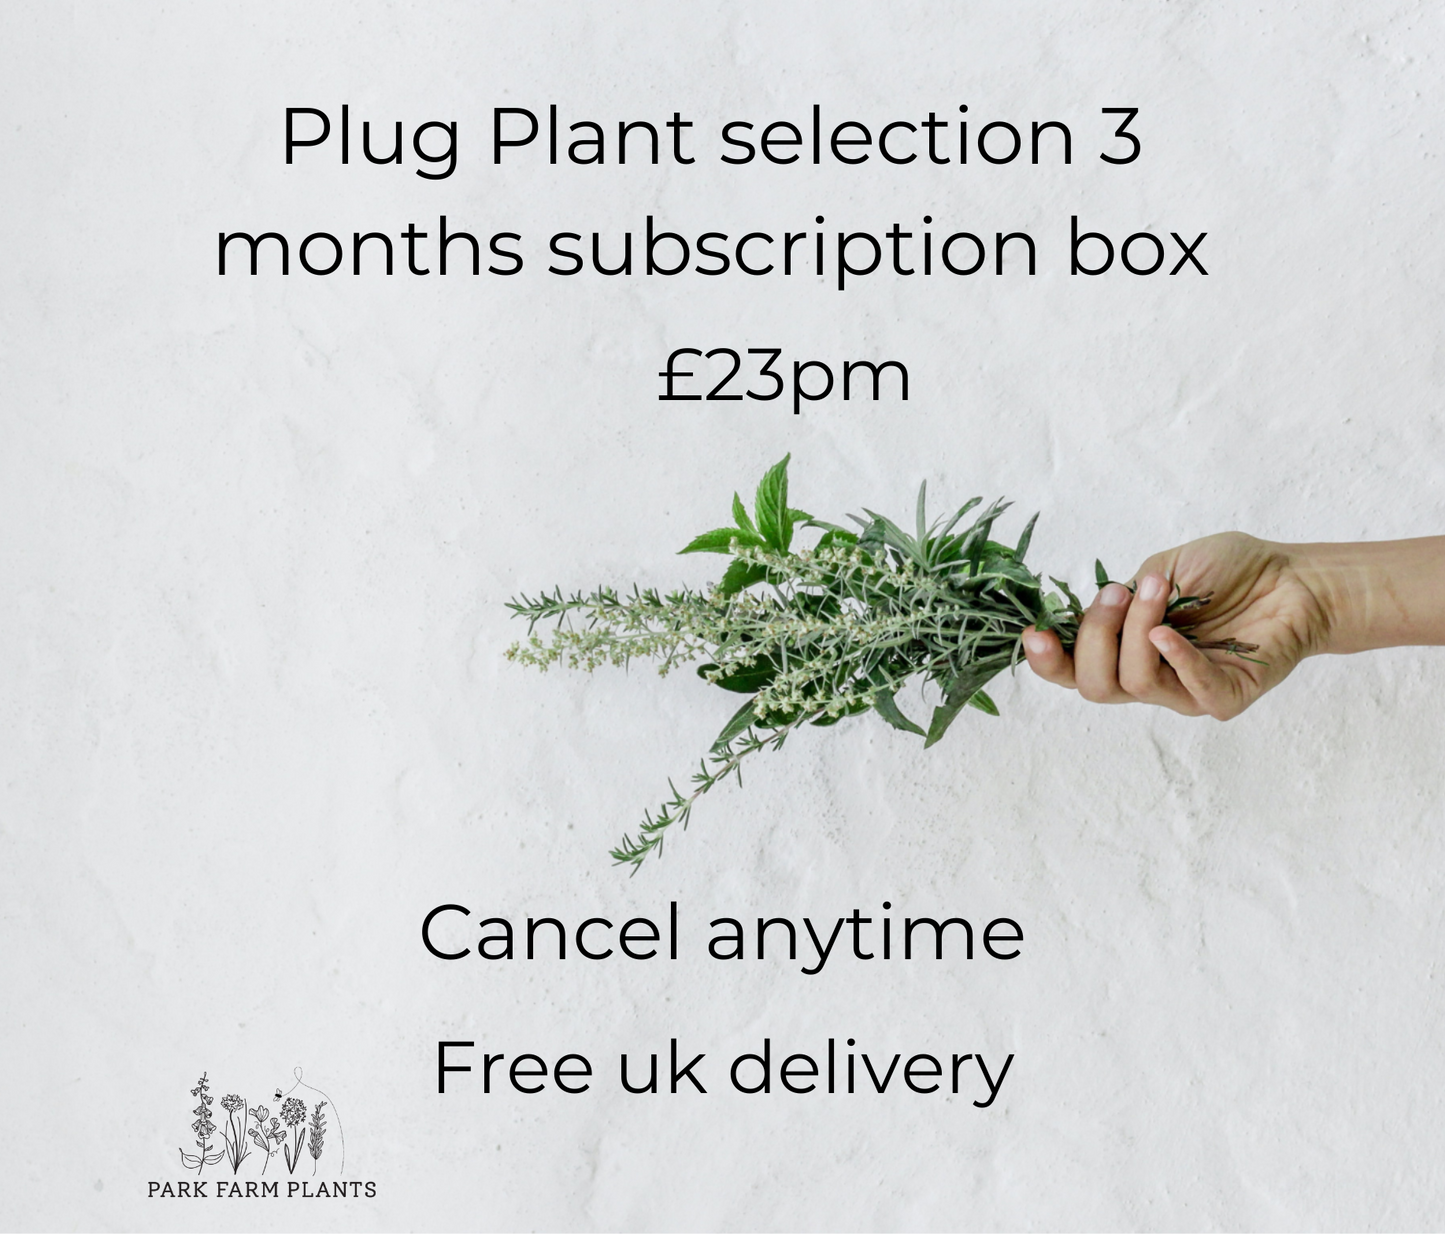 Plug plant selection - 3 months subscription box